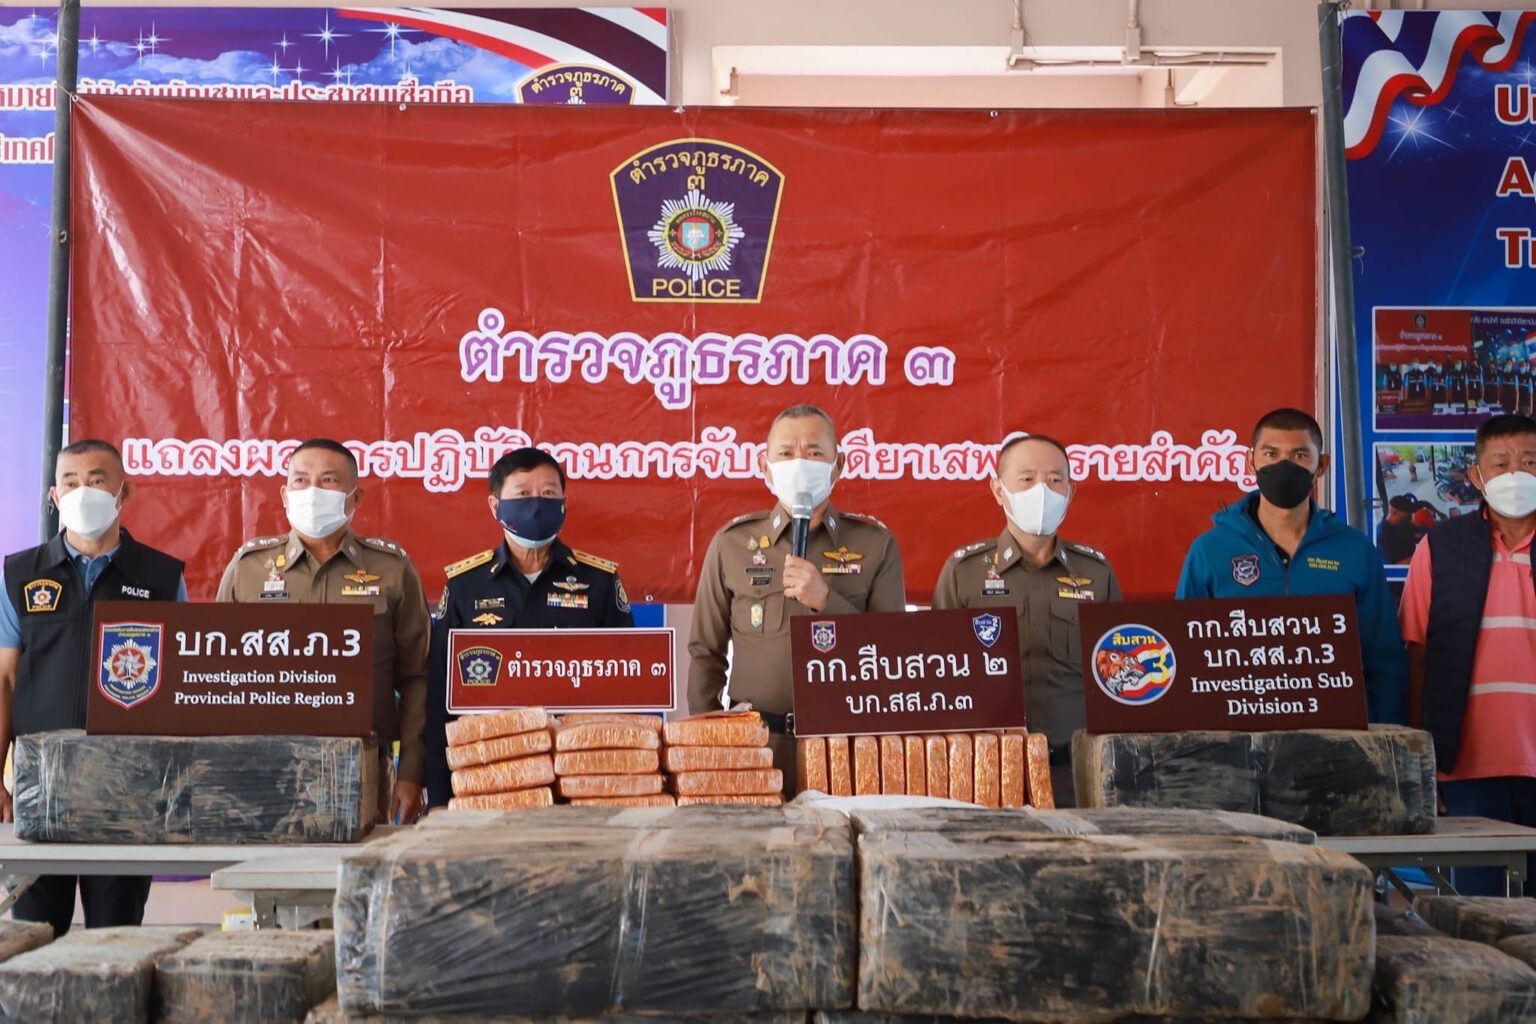 乾燥大麻1.8トン押収、見張り役のバンに「タイ・メディア協会」のステッカー | タイランドハイパーリンクス：Thai Hyper